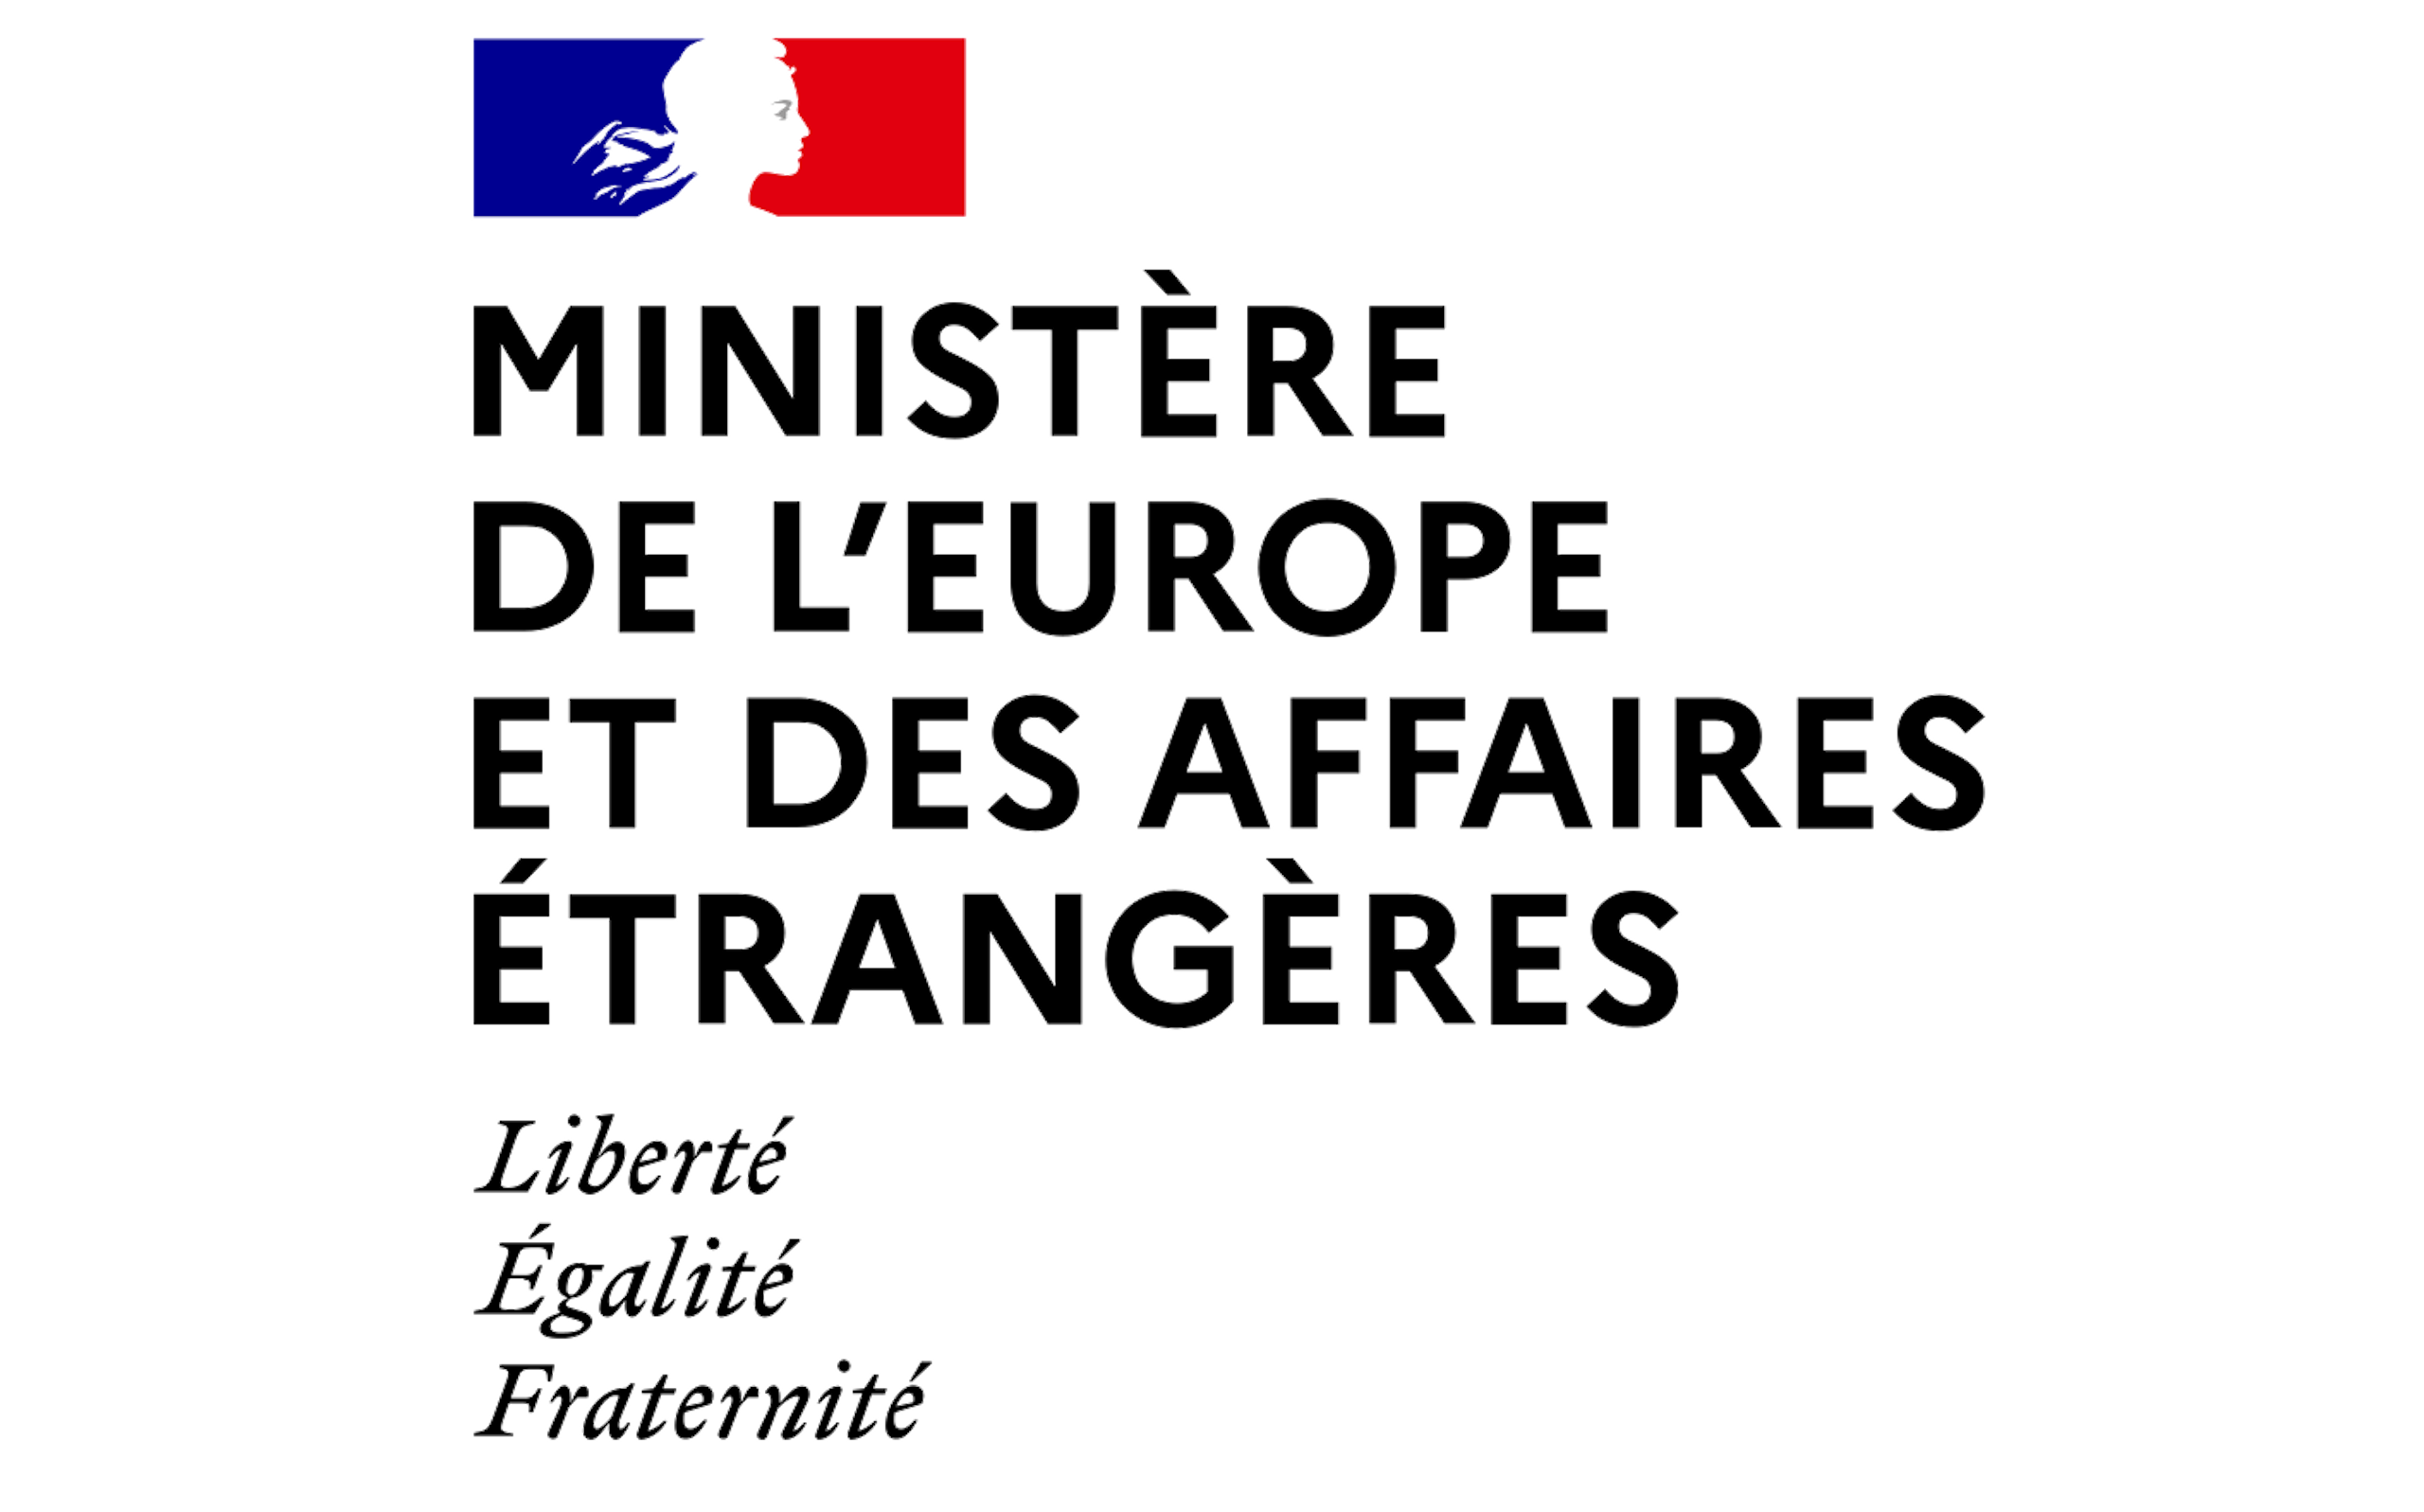 Link to the Ministère de l'Europe et des Affaires Etrangères website